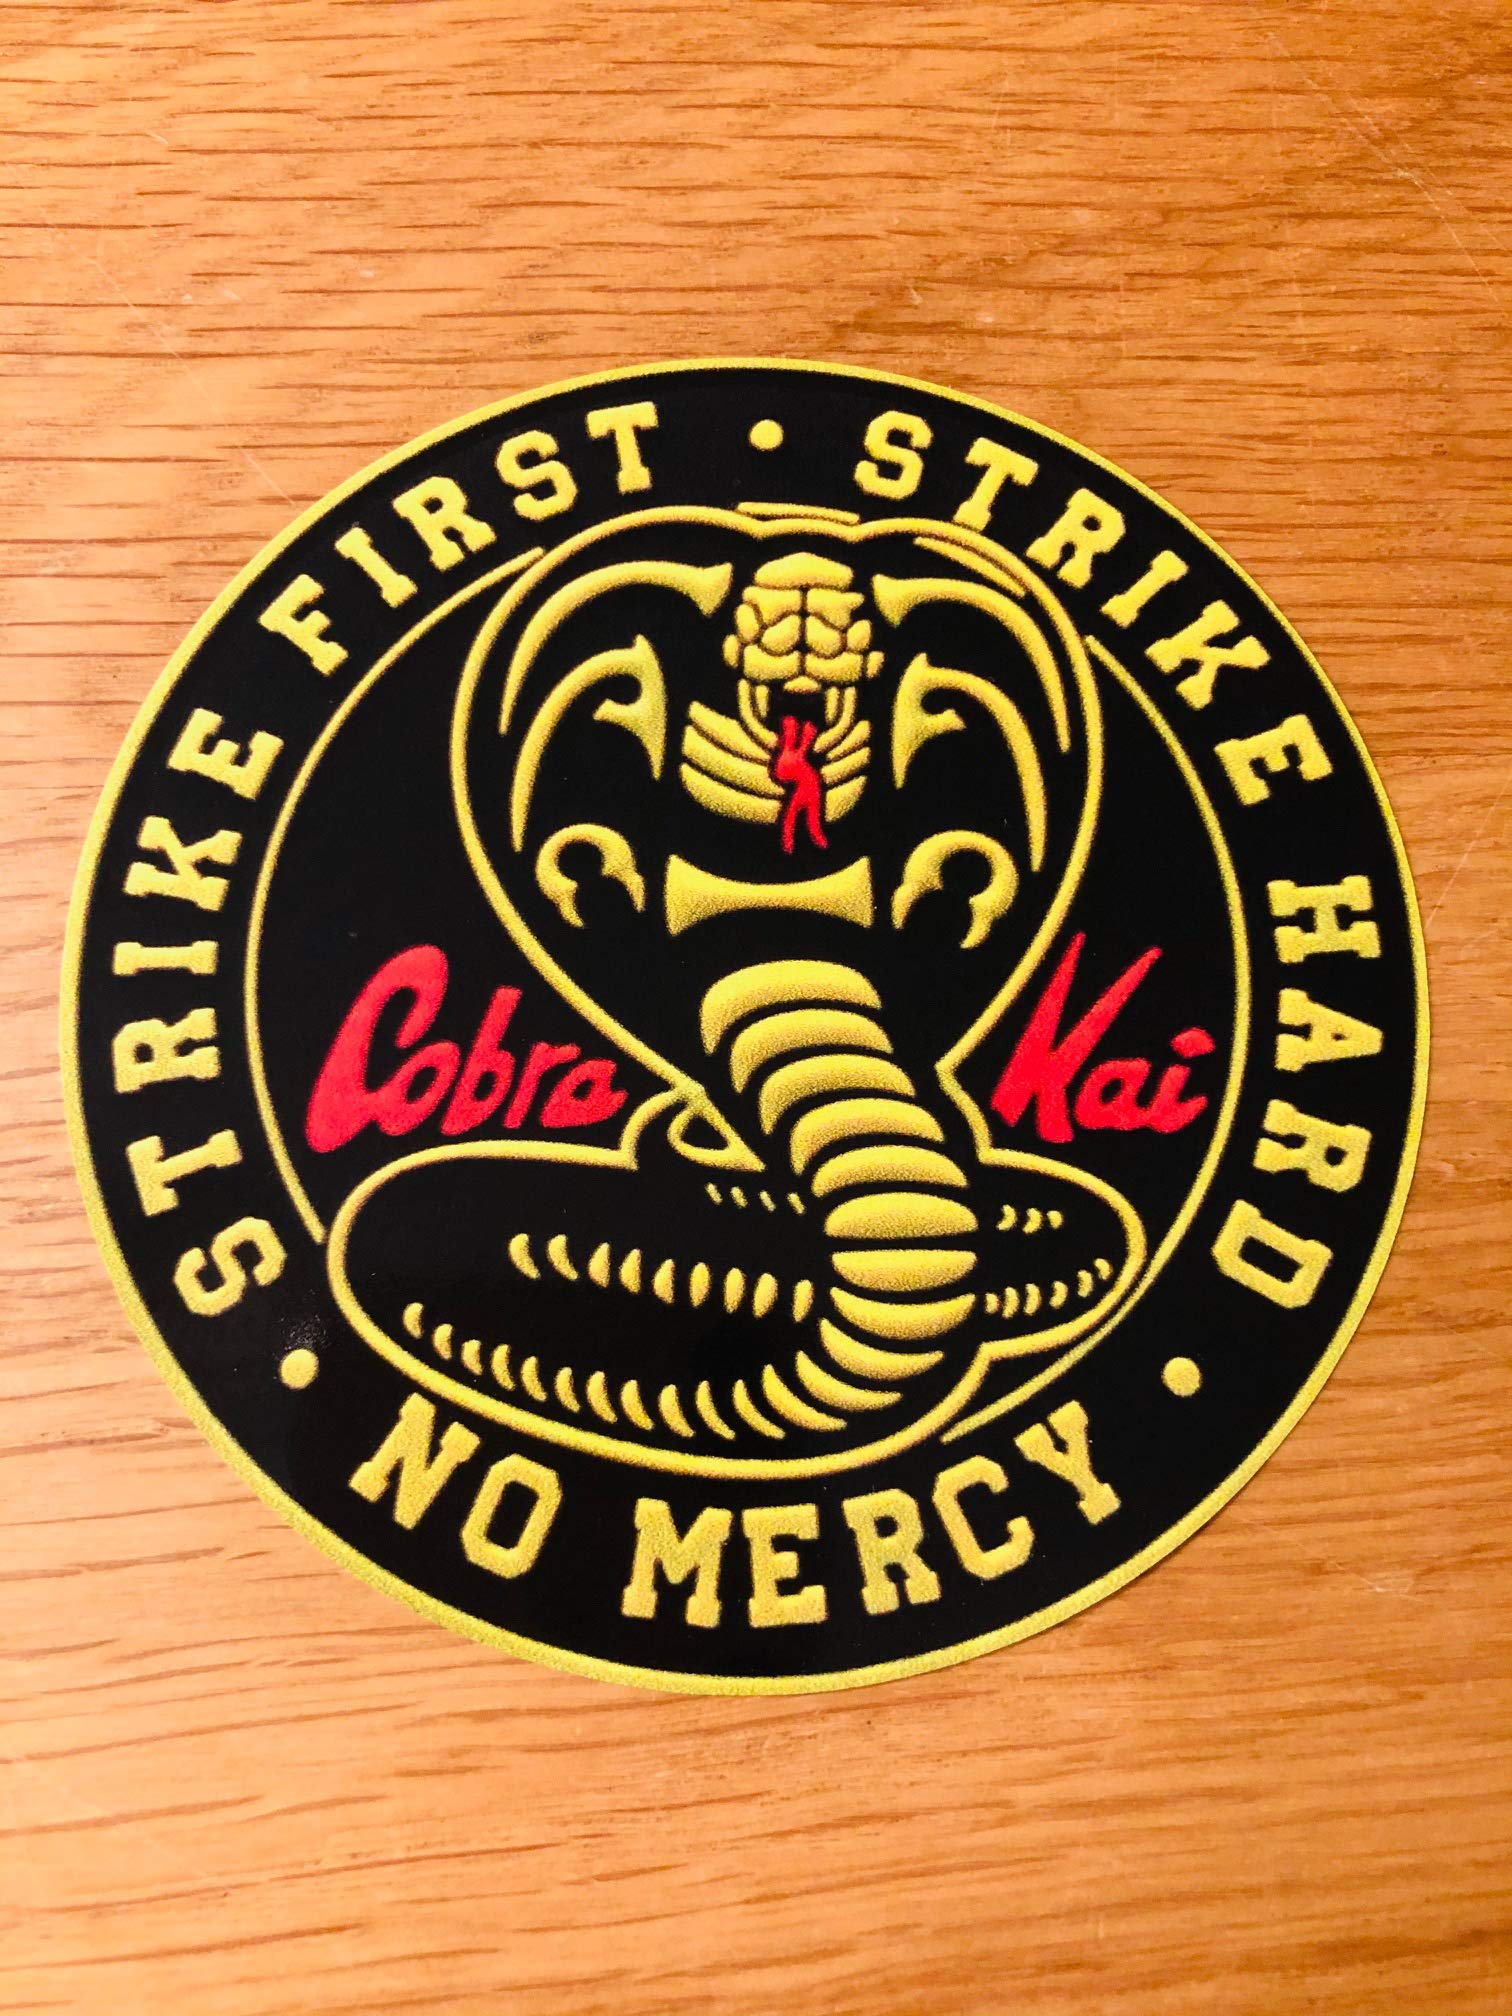 Cobra Kai Strike First Strike Hard NO Mercy Aufkleber Sticker Karate Kid Mi442 von Stickerverticker